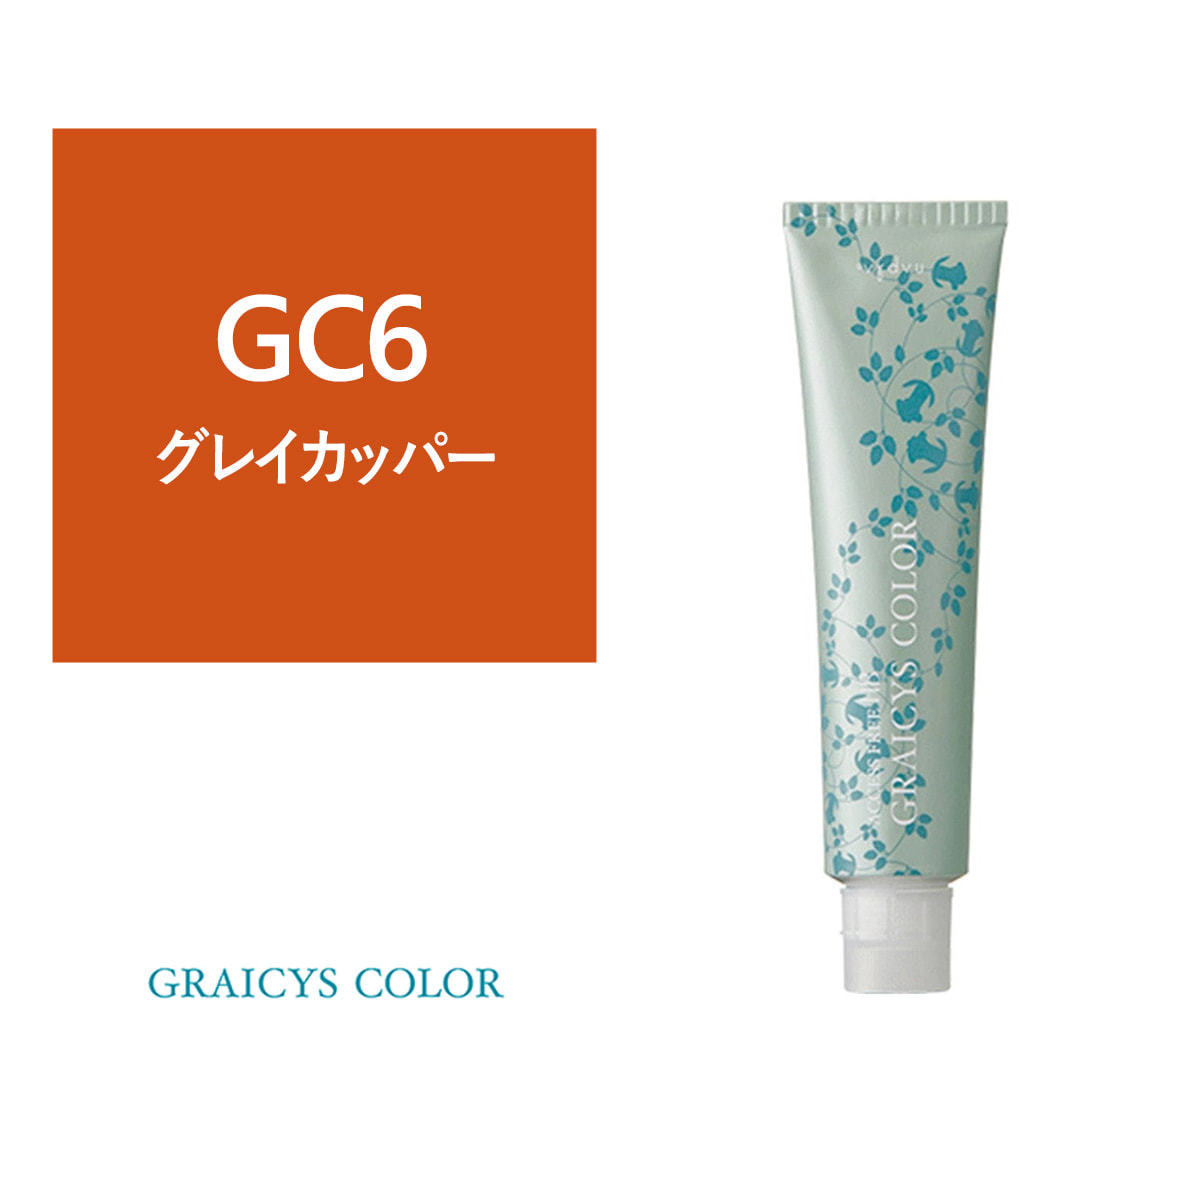 グレイシスカラー《グレイカラー》 GC6 80g【医薬部外品】の卸・通販 | ビューティガレージ